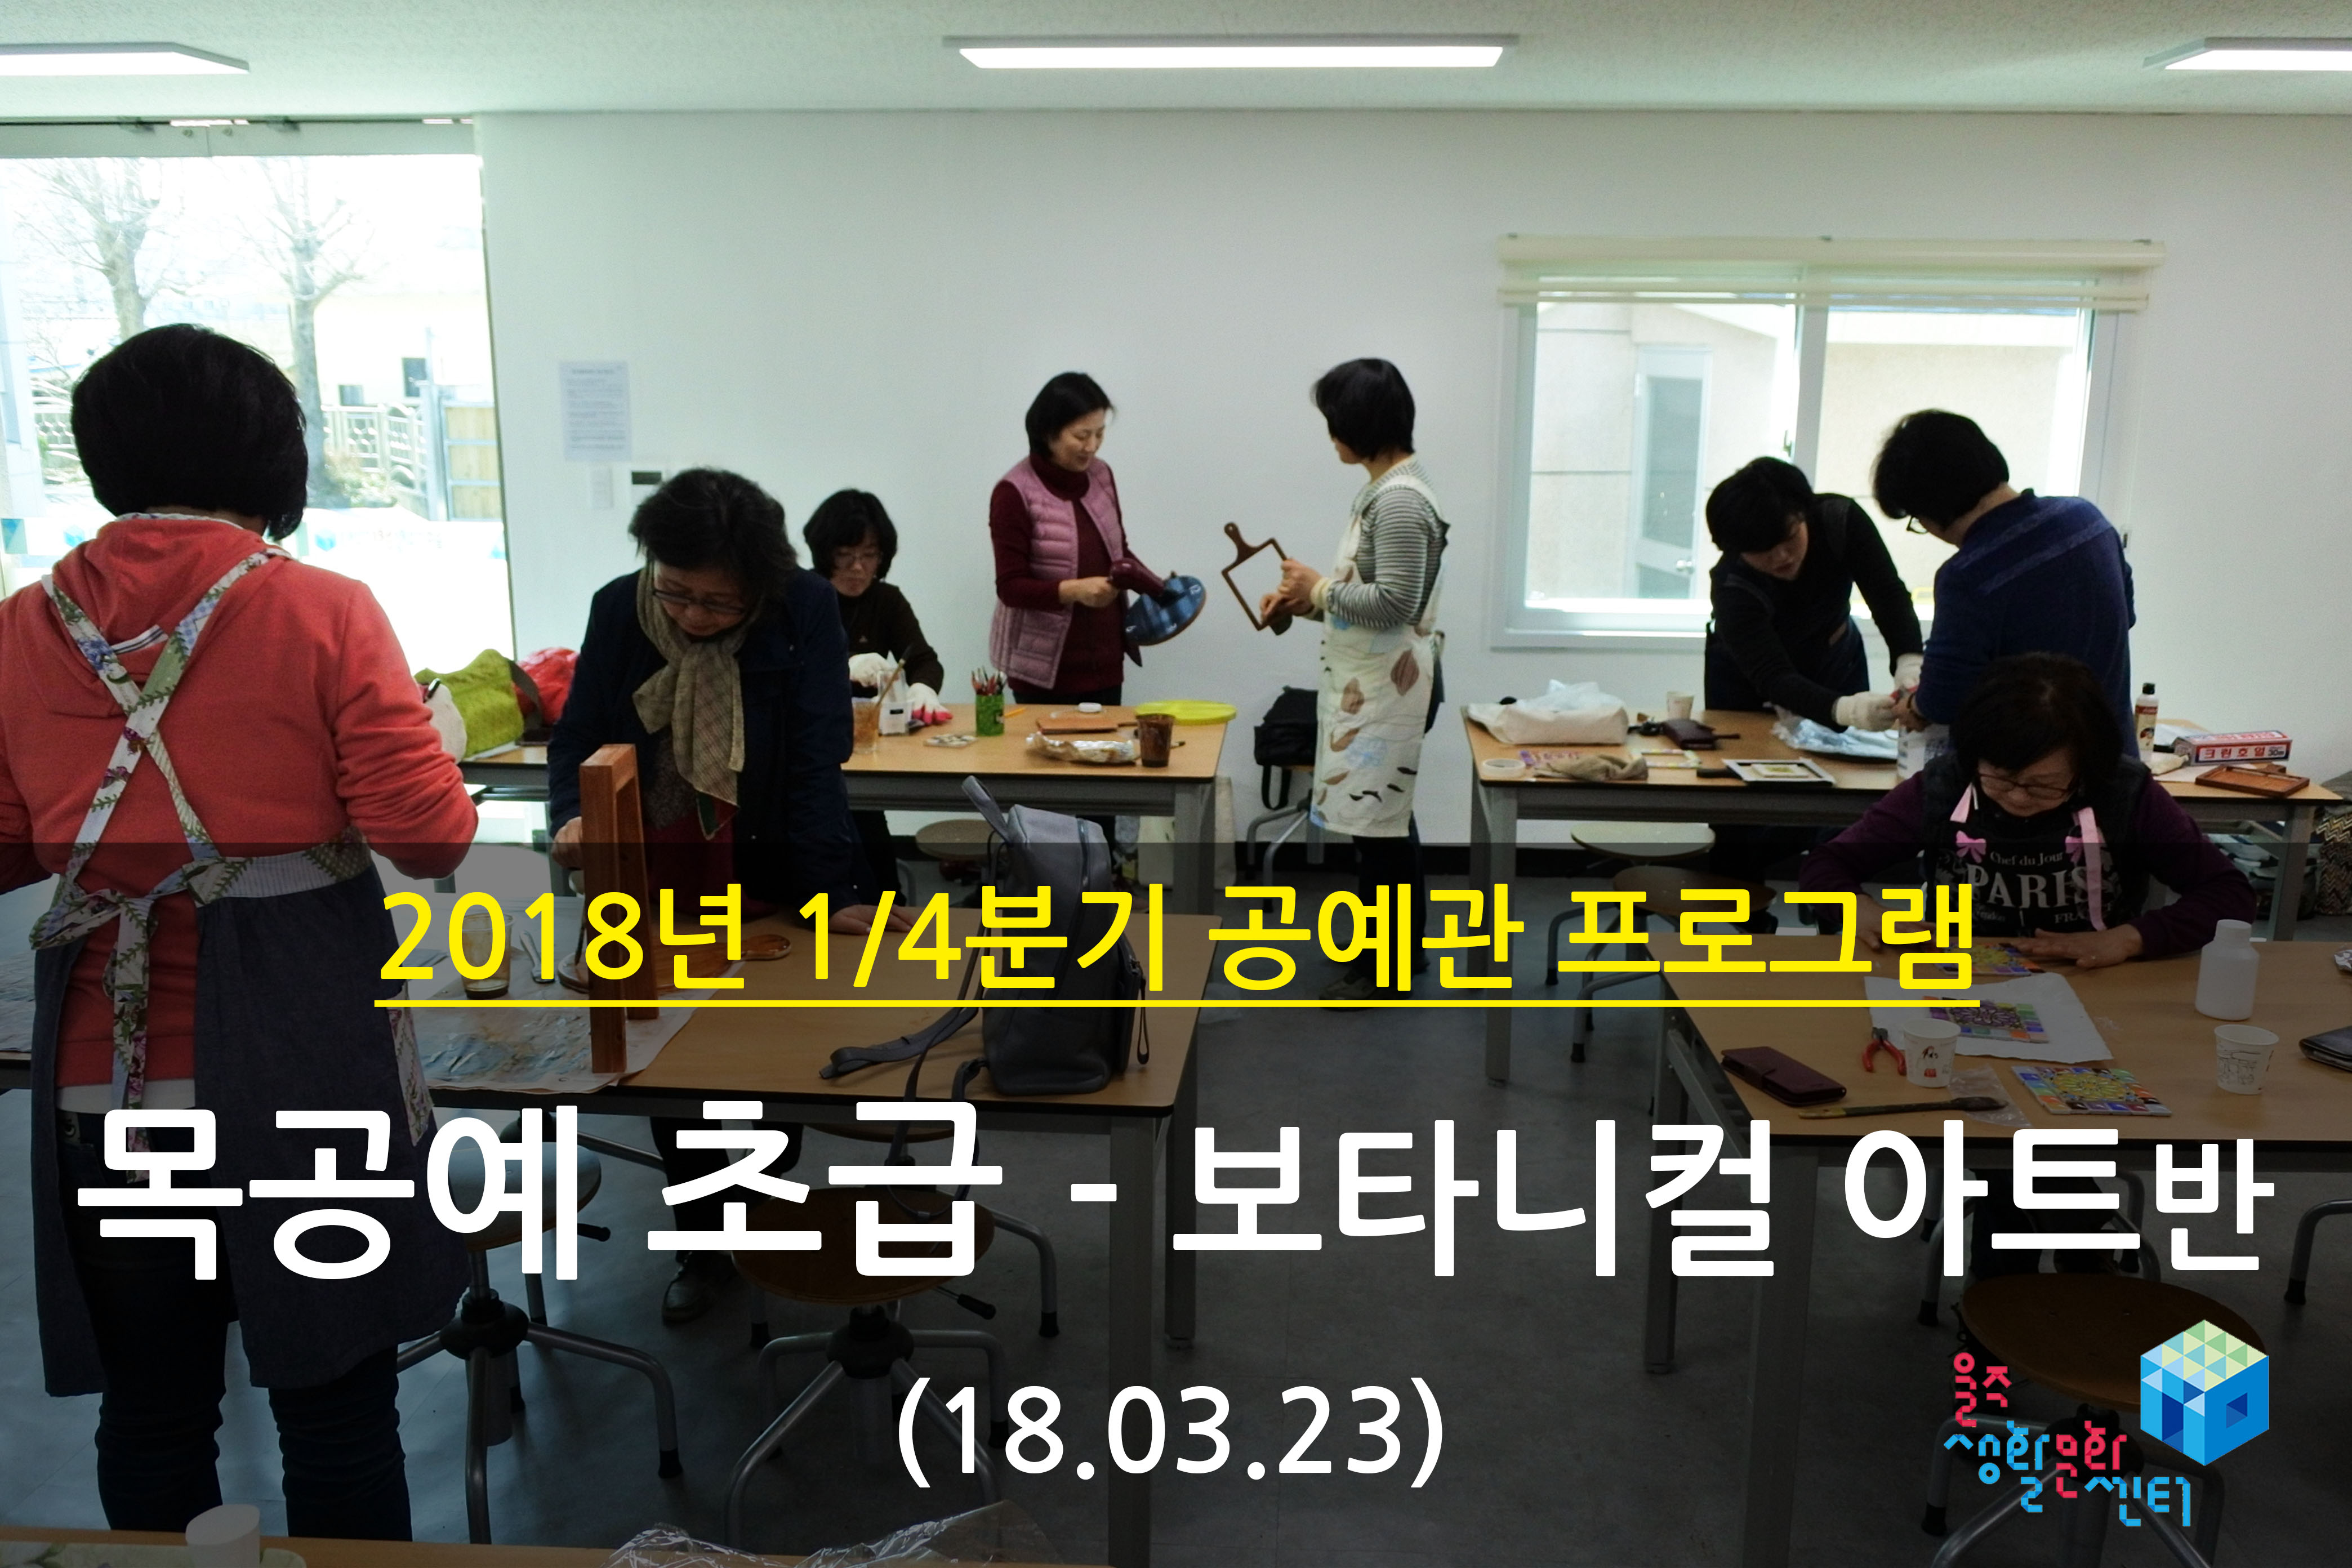 2018.03.23 _ 목공예 초급 - 보타니컬 아트반 _ 1/4분기 11주차 수업